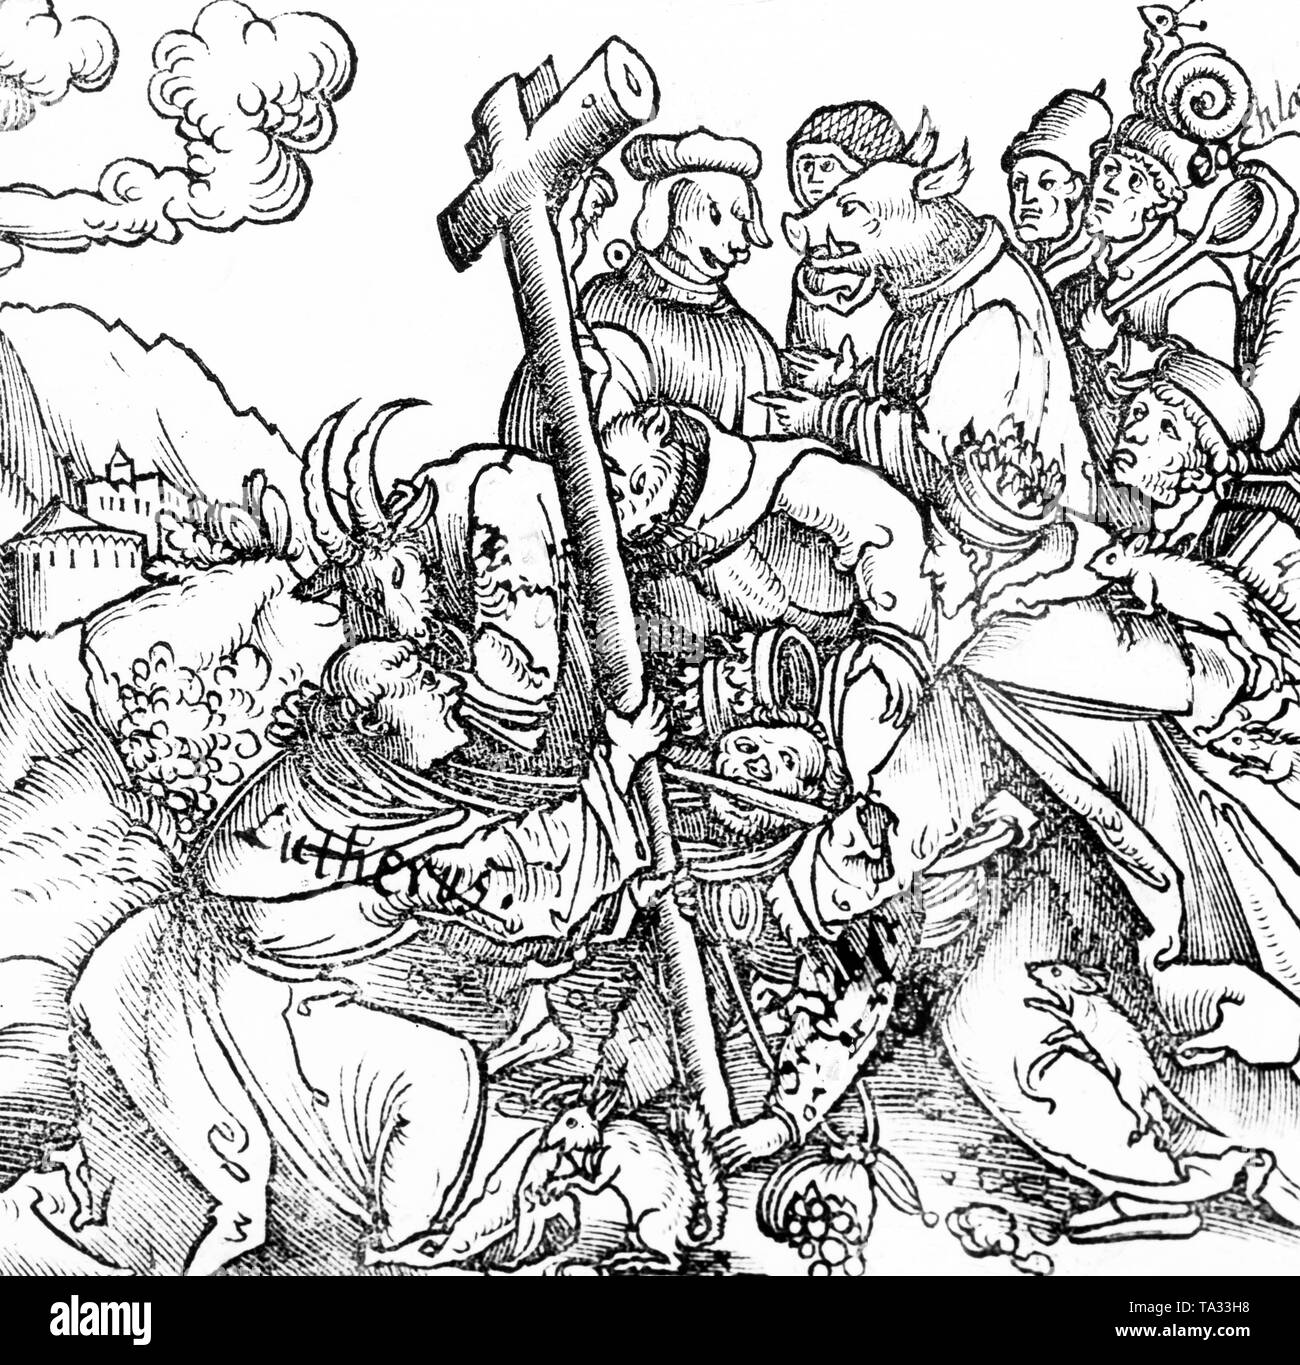 Martin Luther dirige la croix contre ses adversaires, qui sont représentés comme des animaux. Ce travail satirique d'un artiste anonyme est dirigée directement contre le pape. Banque D'Images